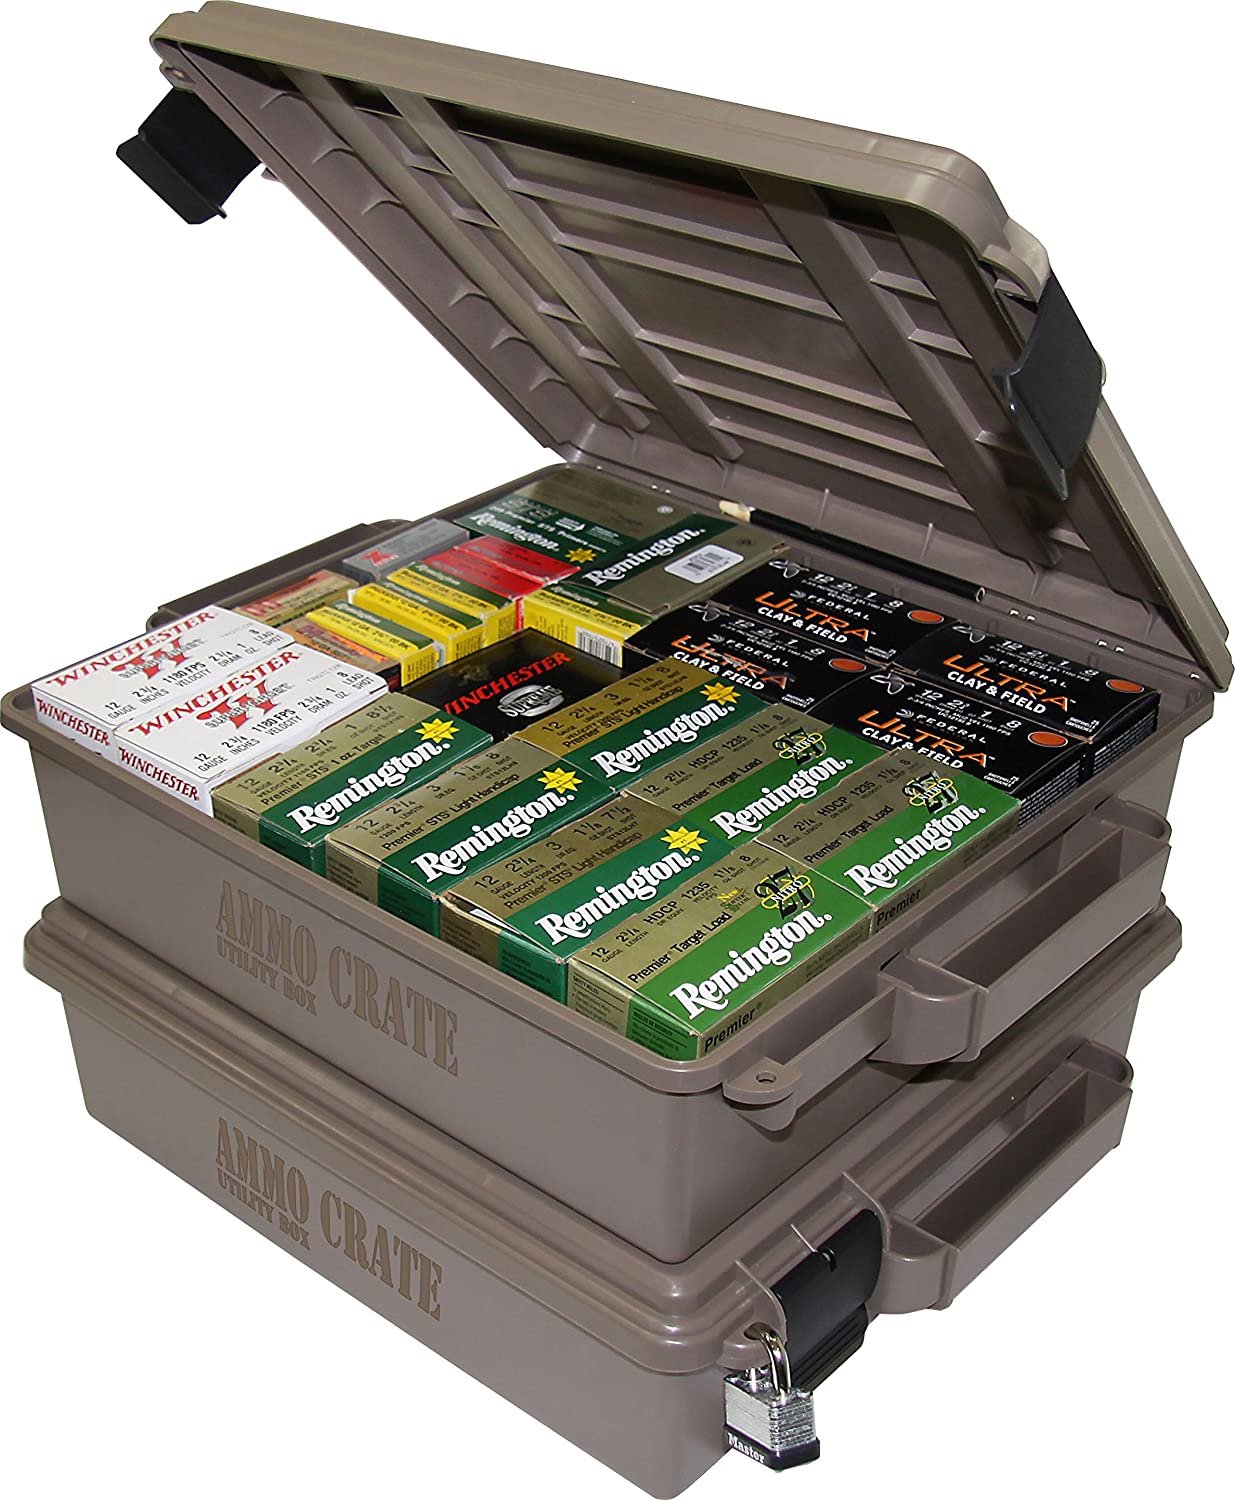 Utility Ammo Box, Plastic Ammo Boxes